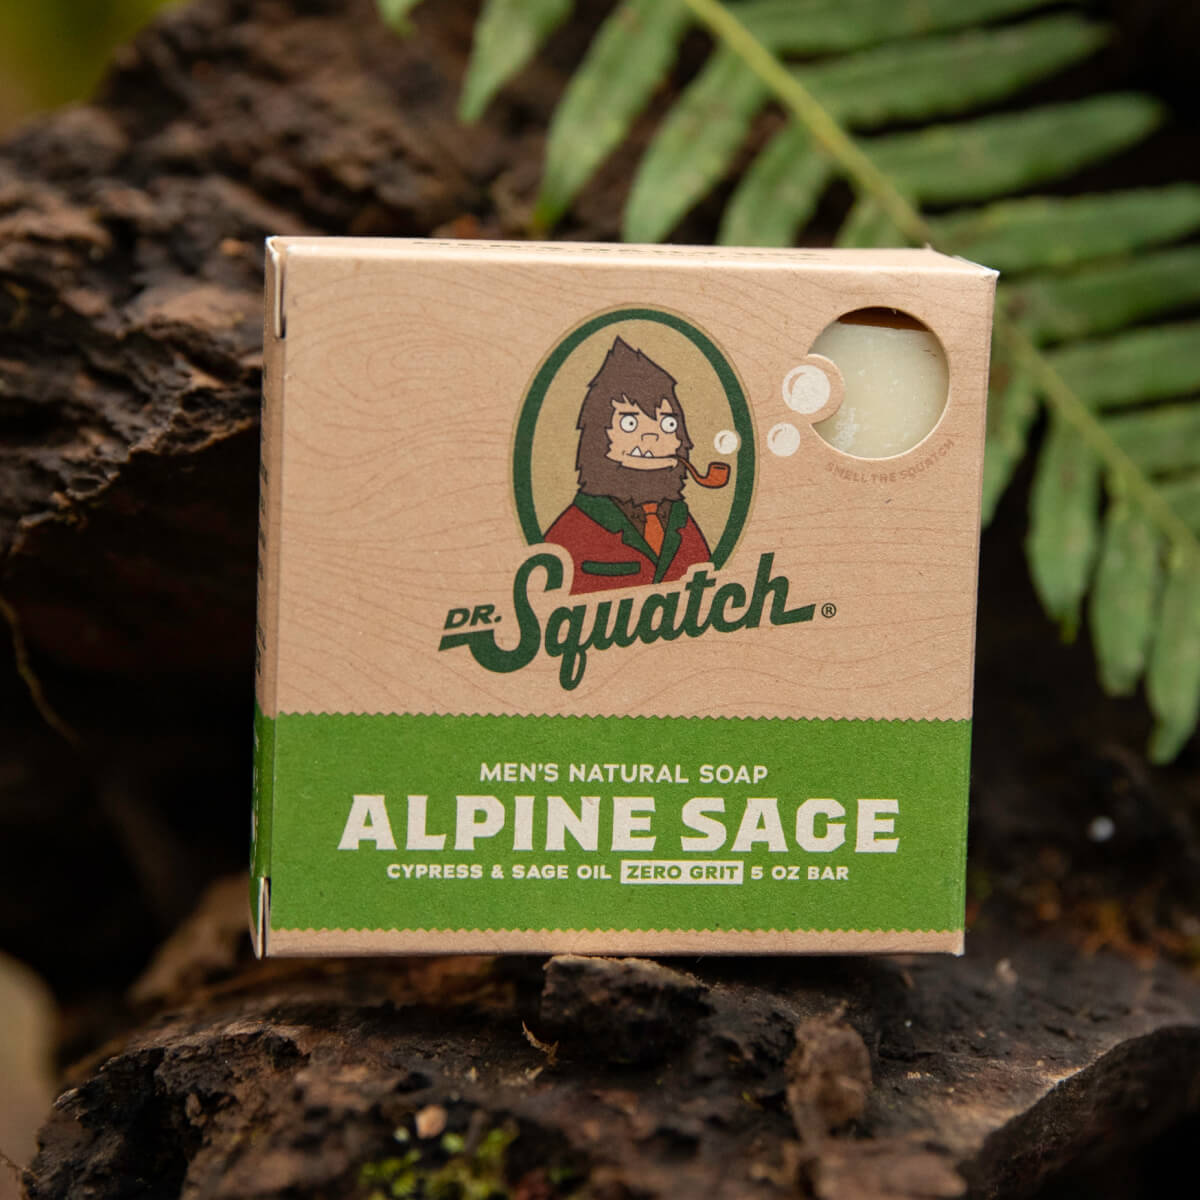 Alpine Sage Candle Bundle